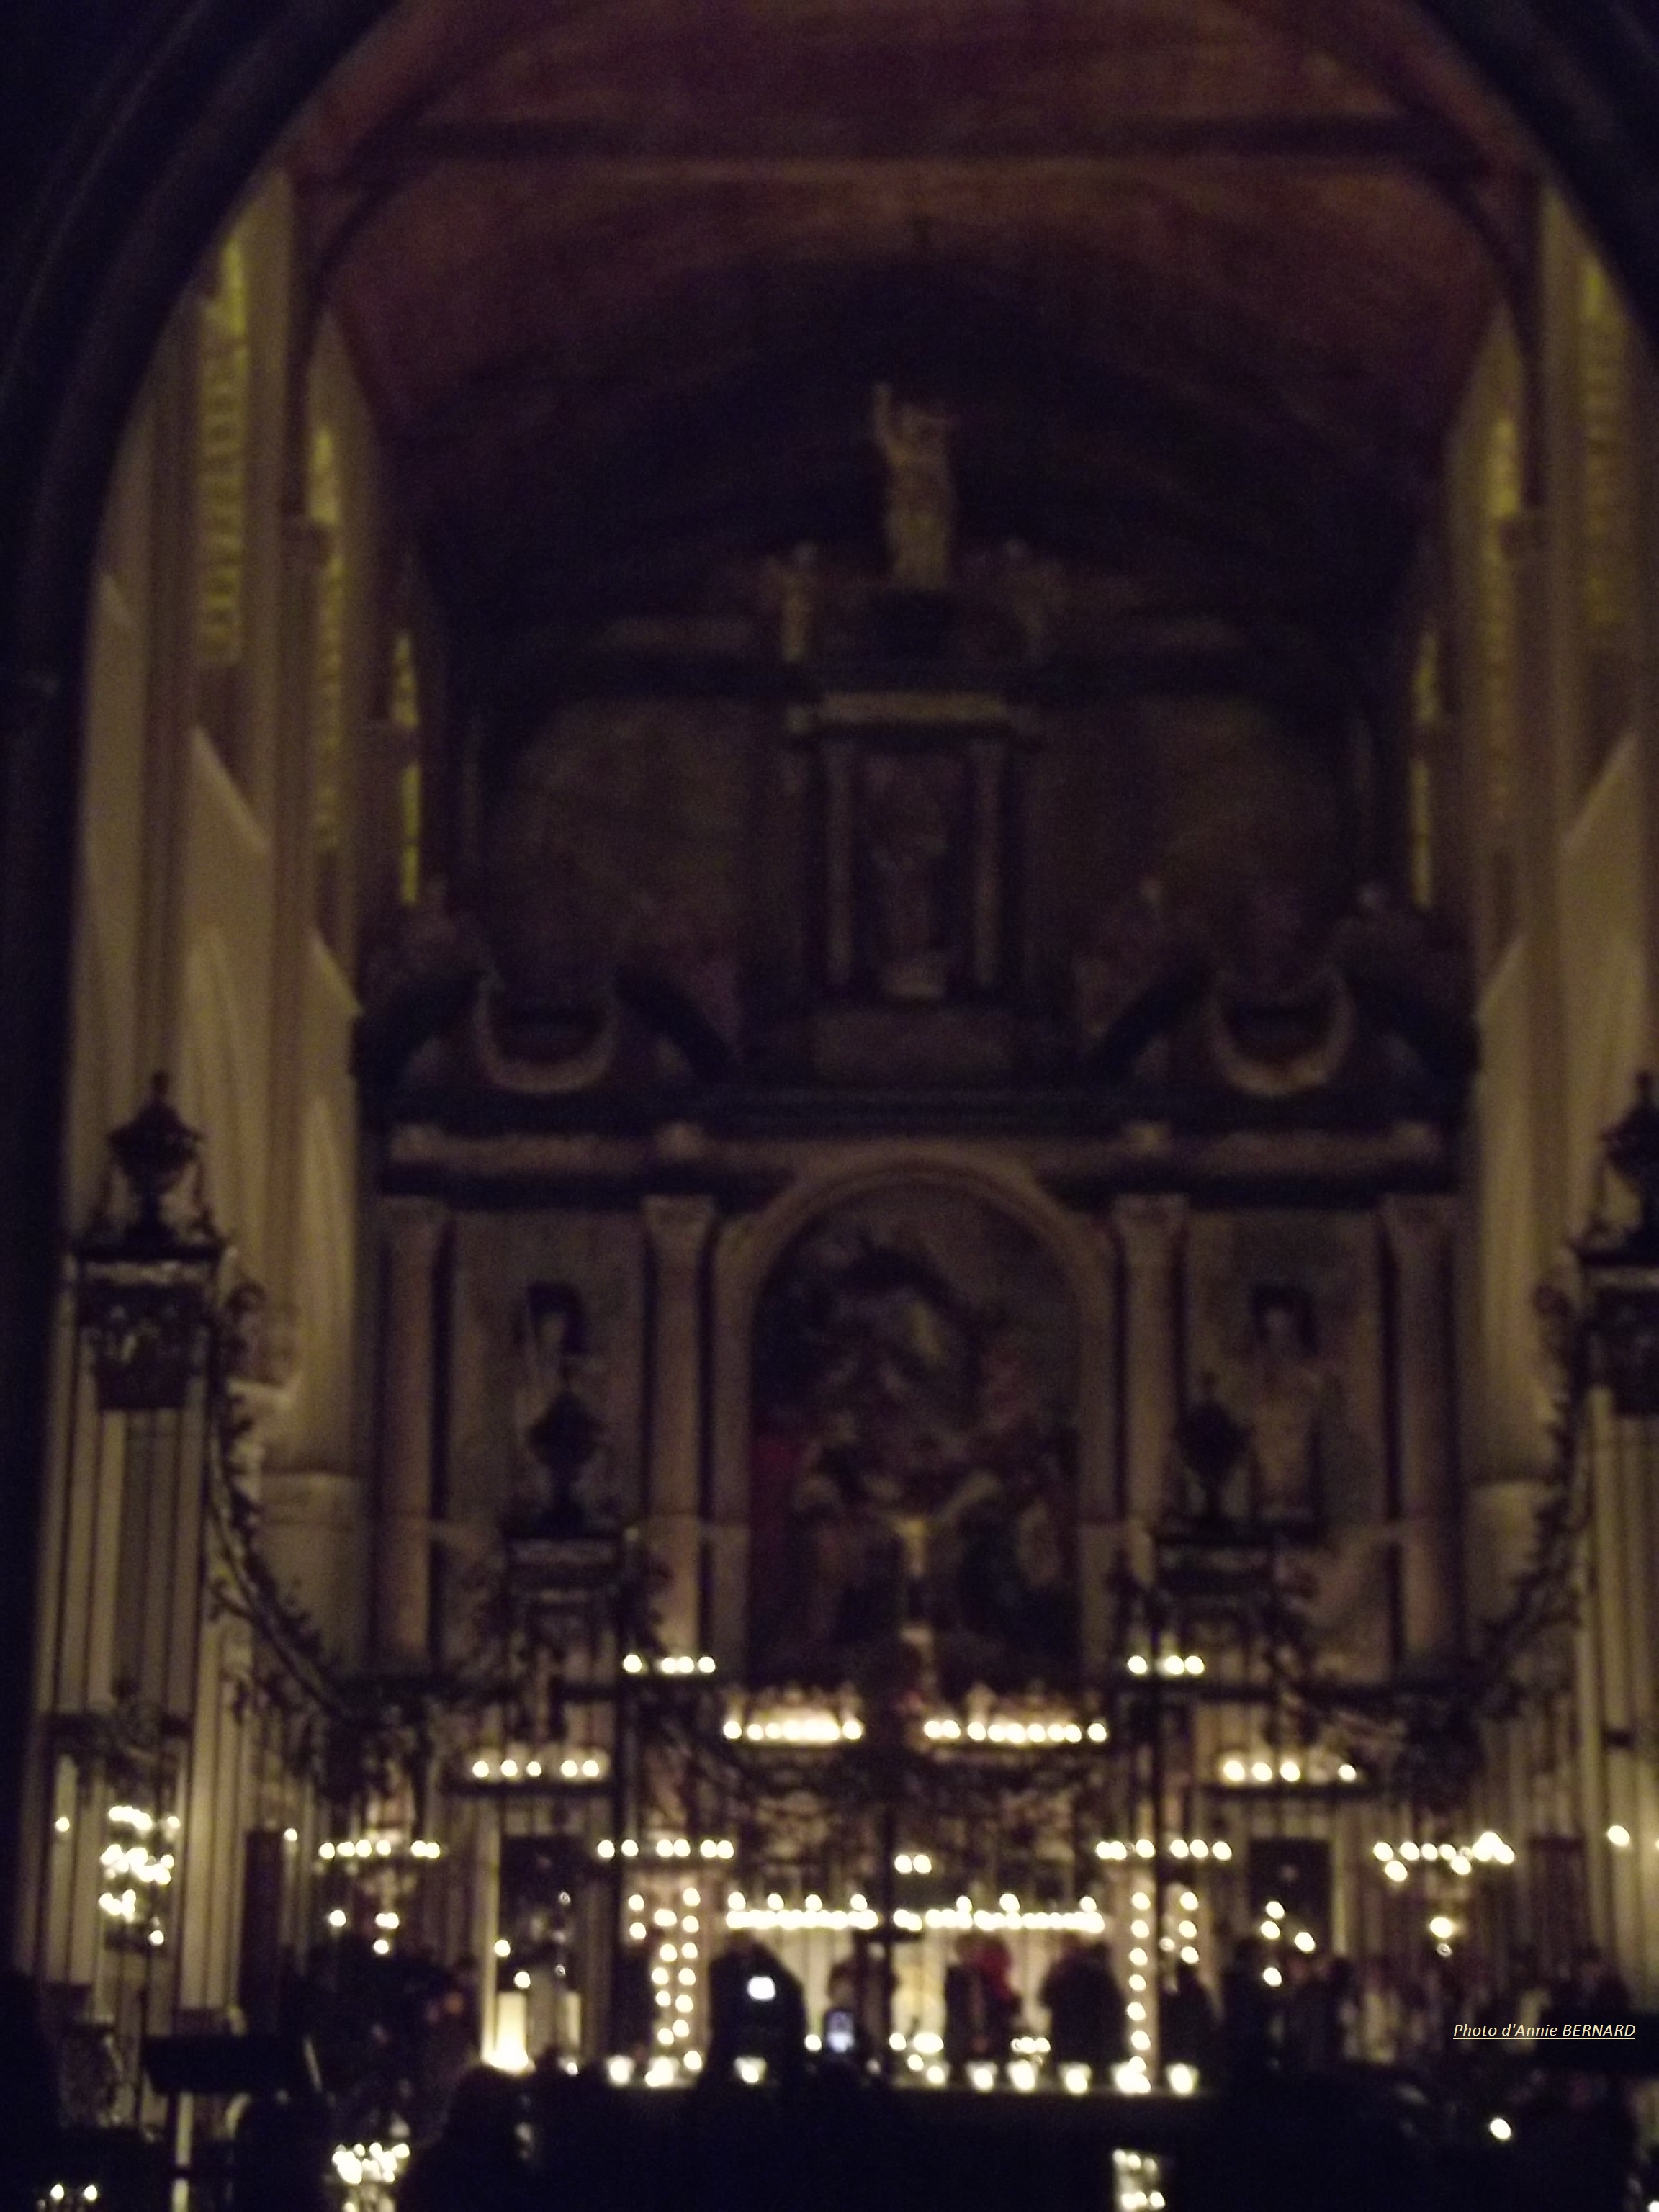 Eglise Notre-Dame de Calais de nuit